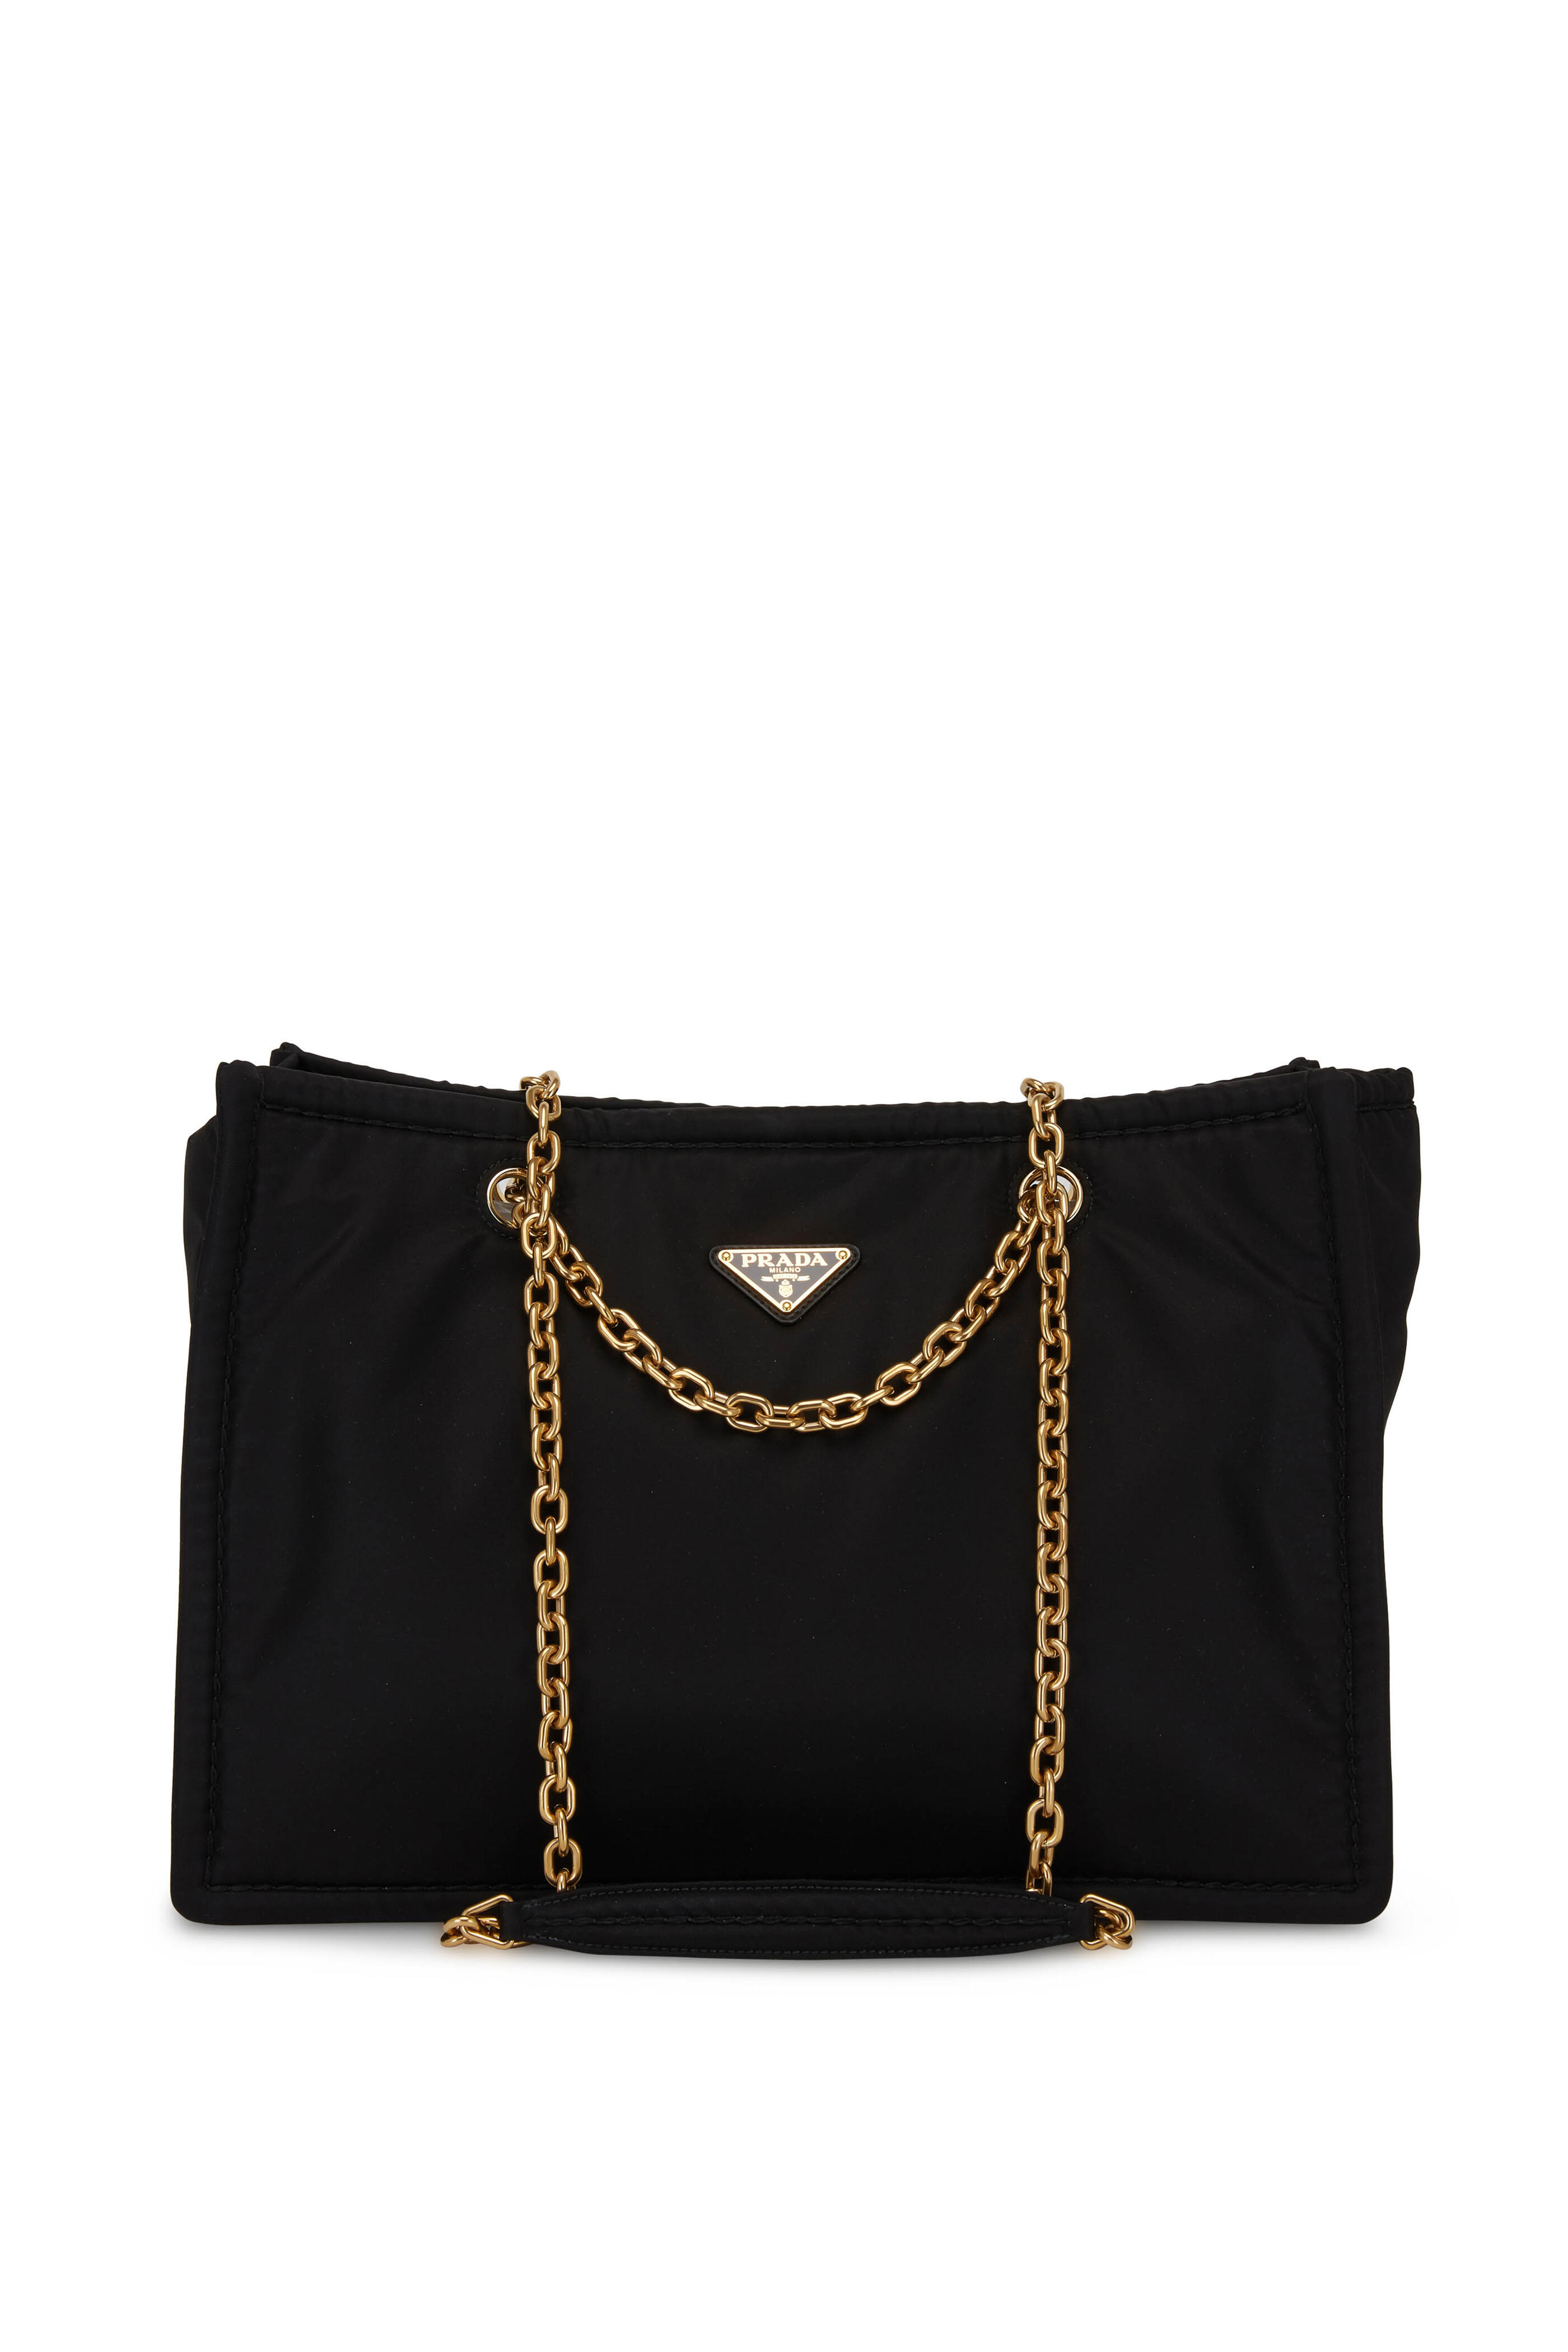 Prada - Black Tessuto Chain Strap Shoulder Bag | Mitchell Stores